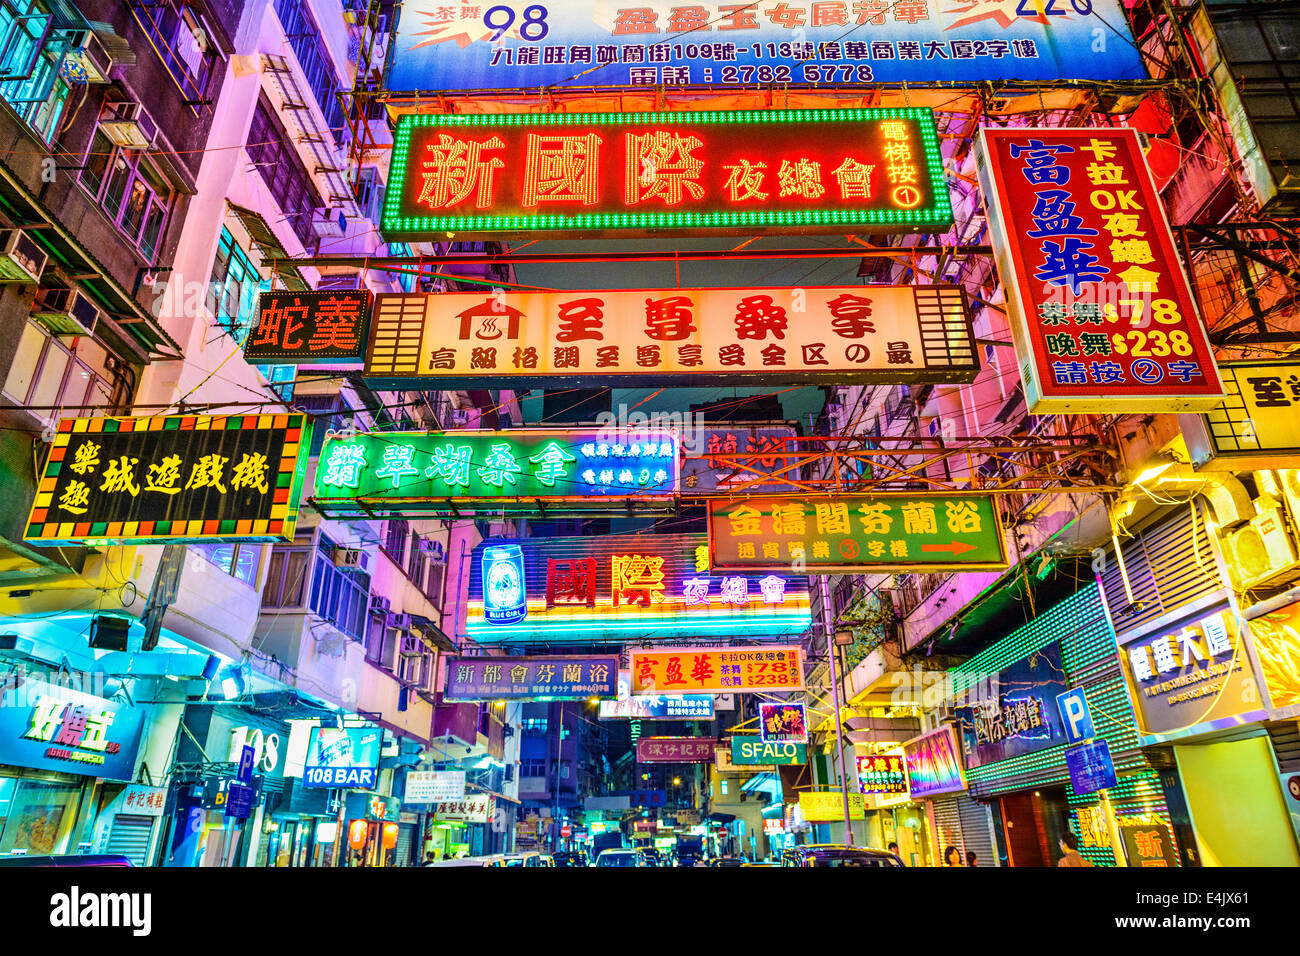 HONG KONG, CHINA - 16. Mai 2014: Zeichen die Nacht erhellen in Kowloon. Hong Kong ist bekannt für die unzähligen Neonröhren lo Stockfoto